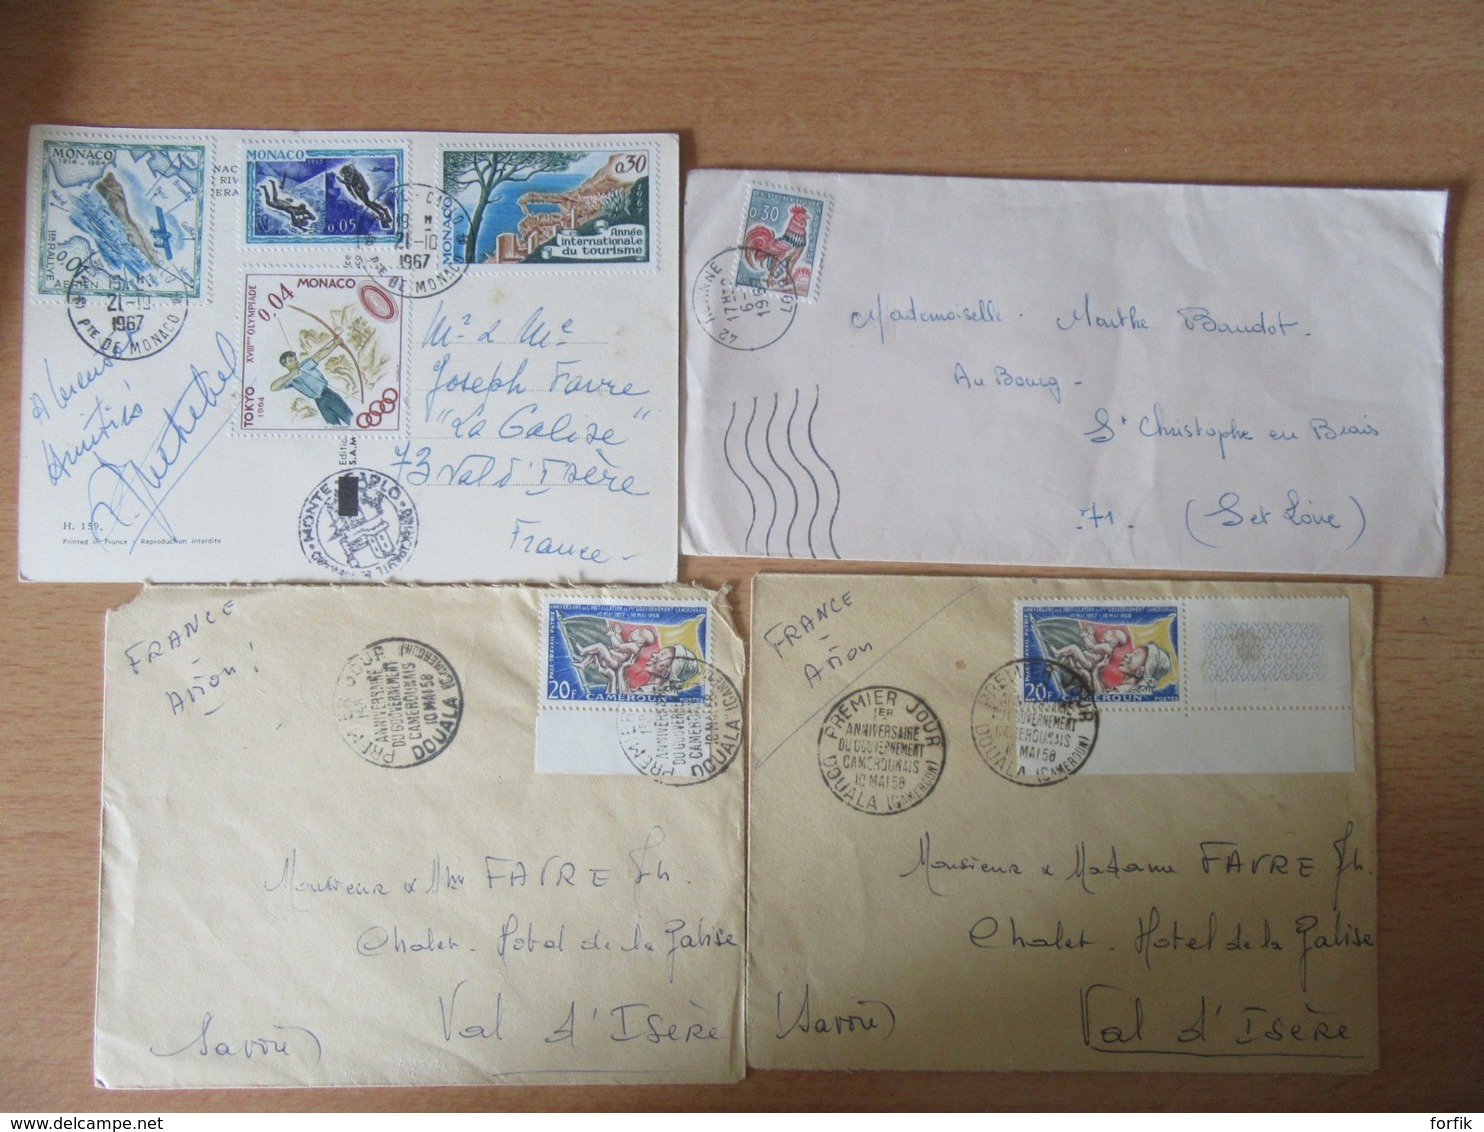 France + Monaco - 37 Enveloppes et cartes - période classique (Napoléon 1862) à moderne (1995) - A étudier